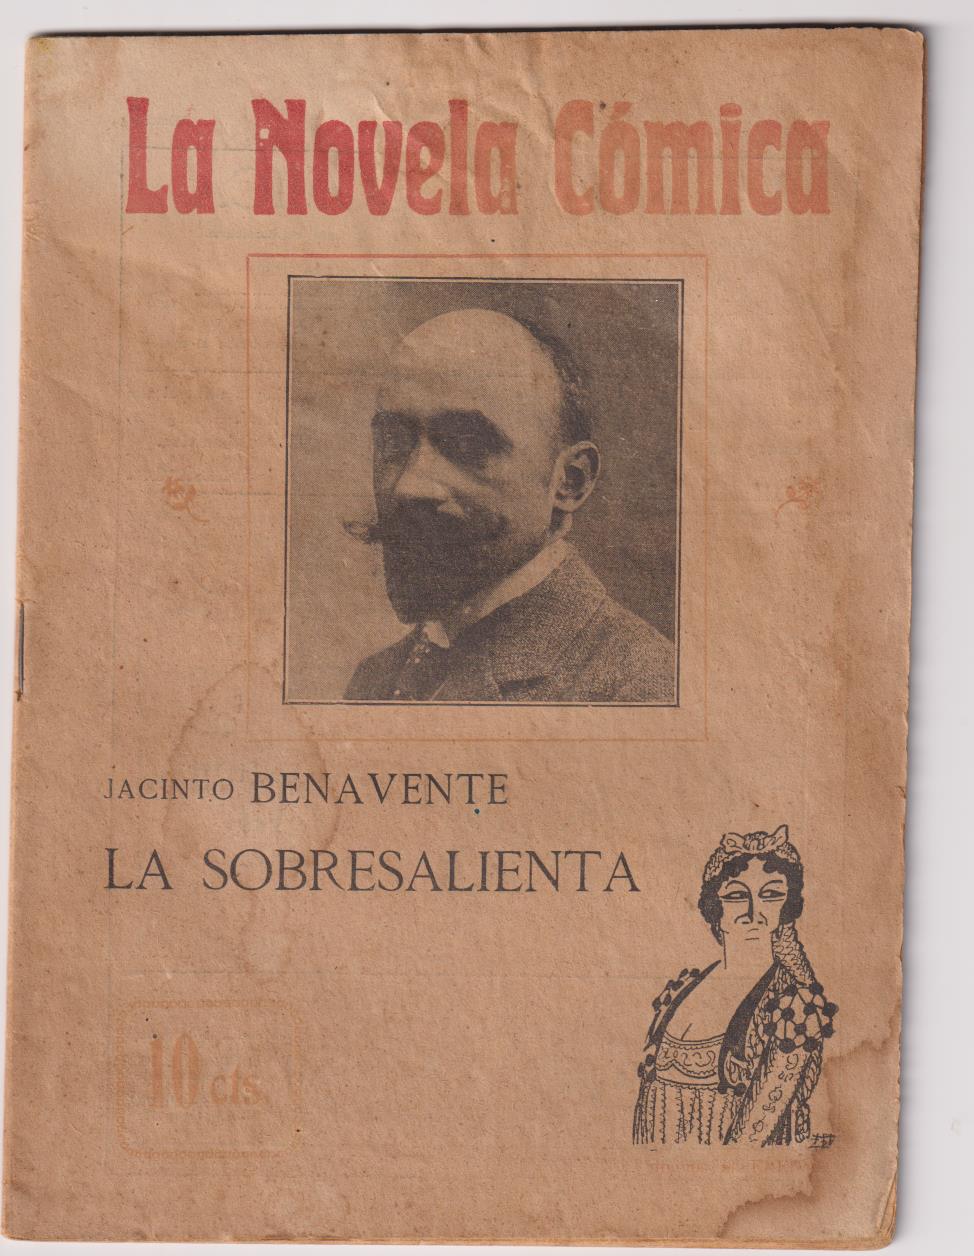 La Novela Cómica nº 5. La sobresaliente por Jacinto Benavente. Año 1916